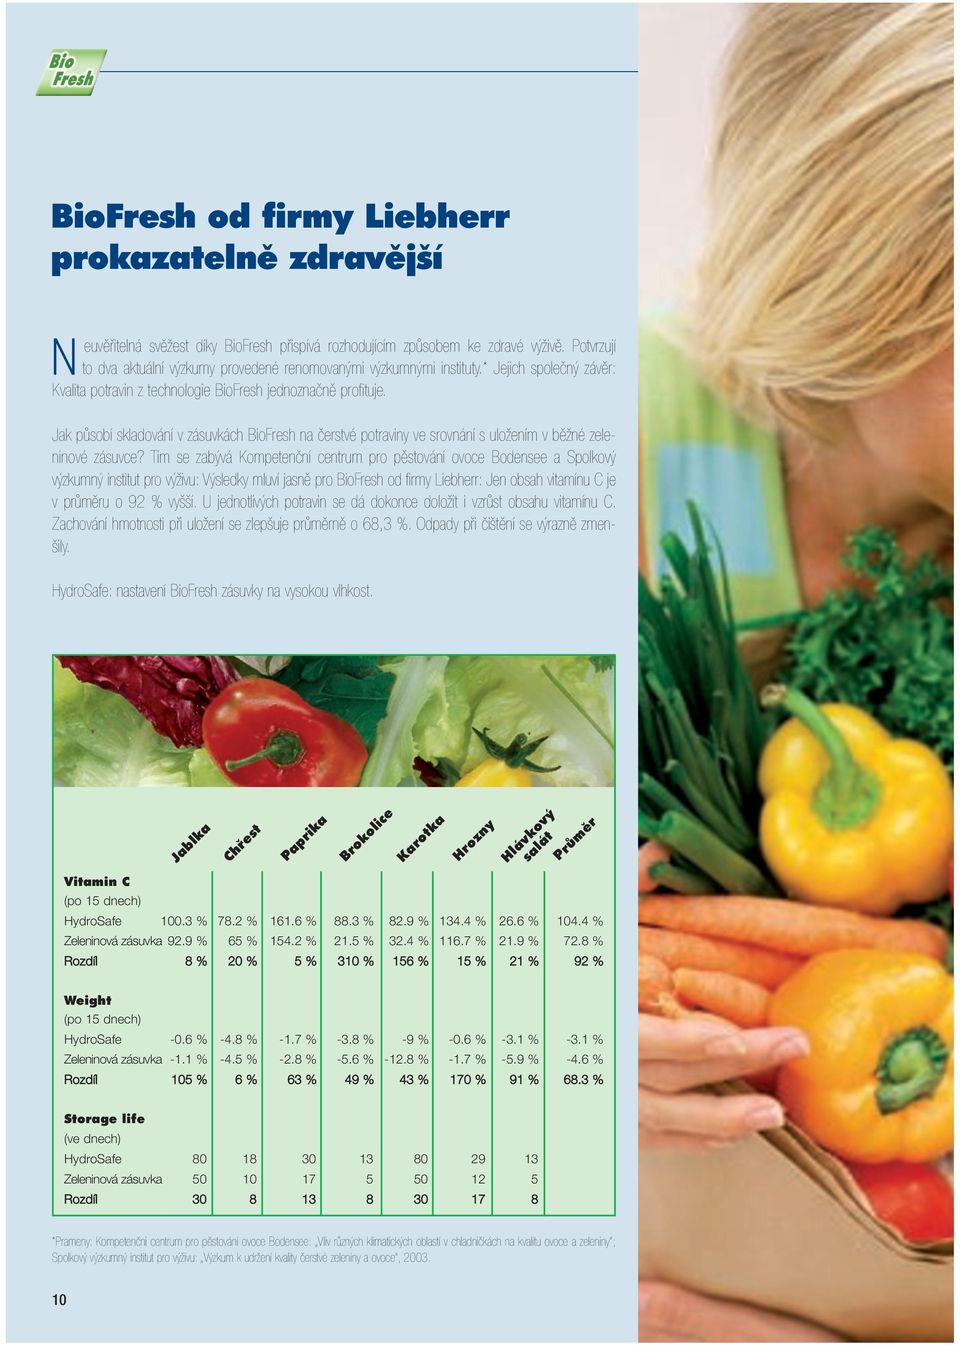 Jak působí skladování v zásuvkách BioFresh na čerstvé potraviny ve srovnání s uložením v běžné zeleninové zásuvce?